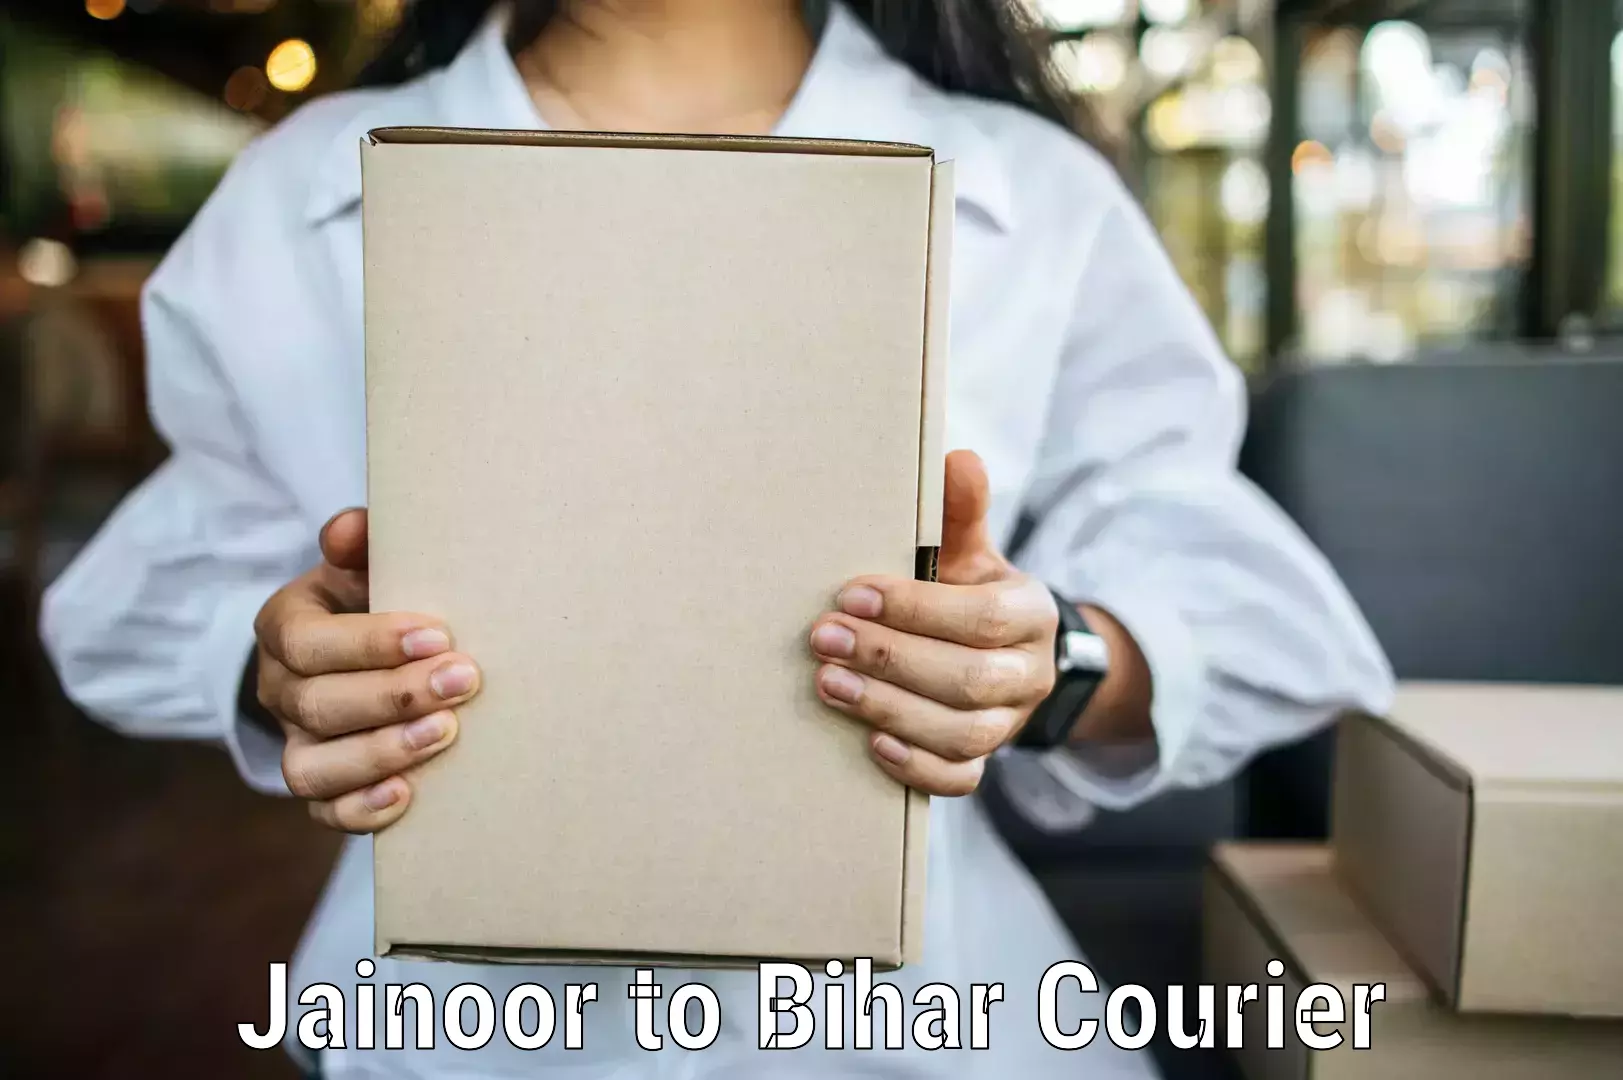 Express courier capabilities Jainoor to Bihar